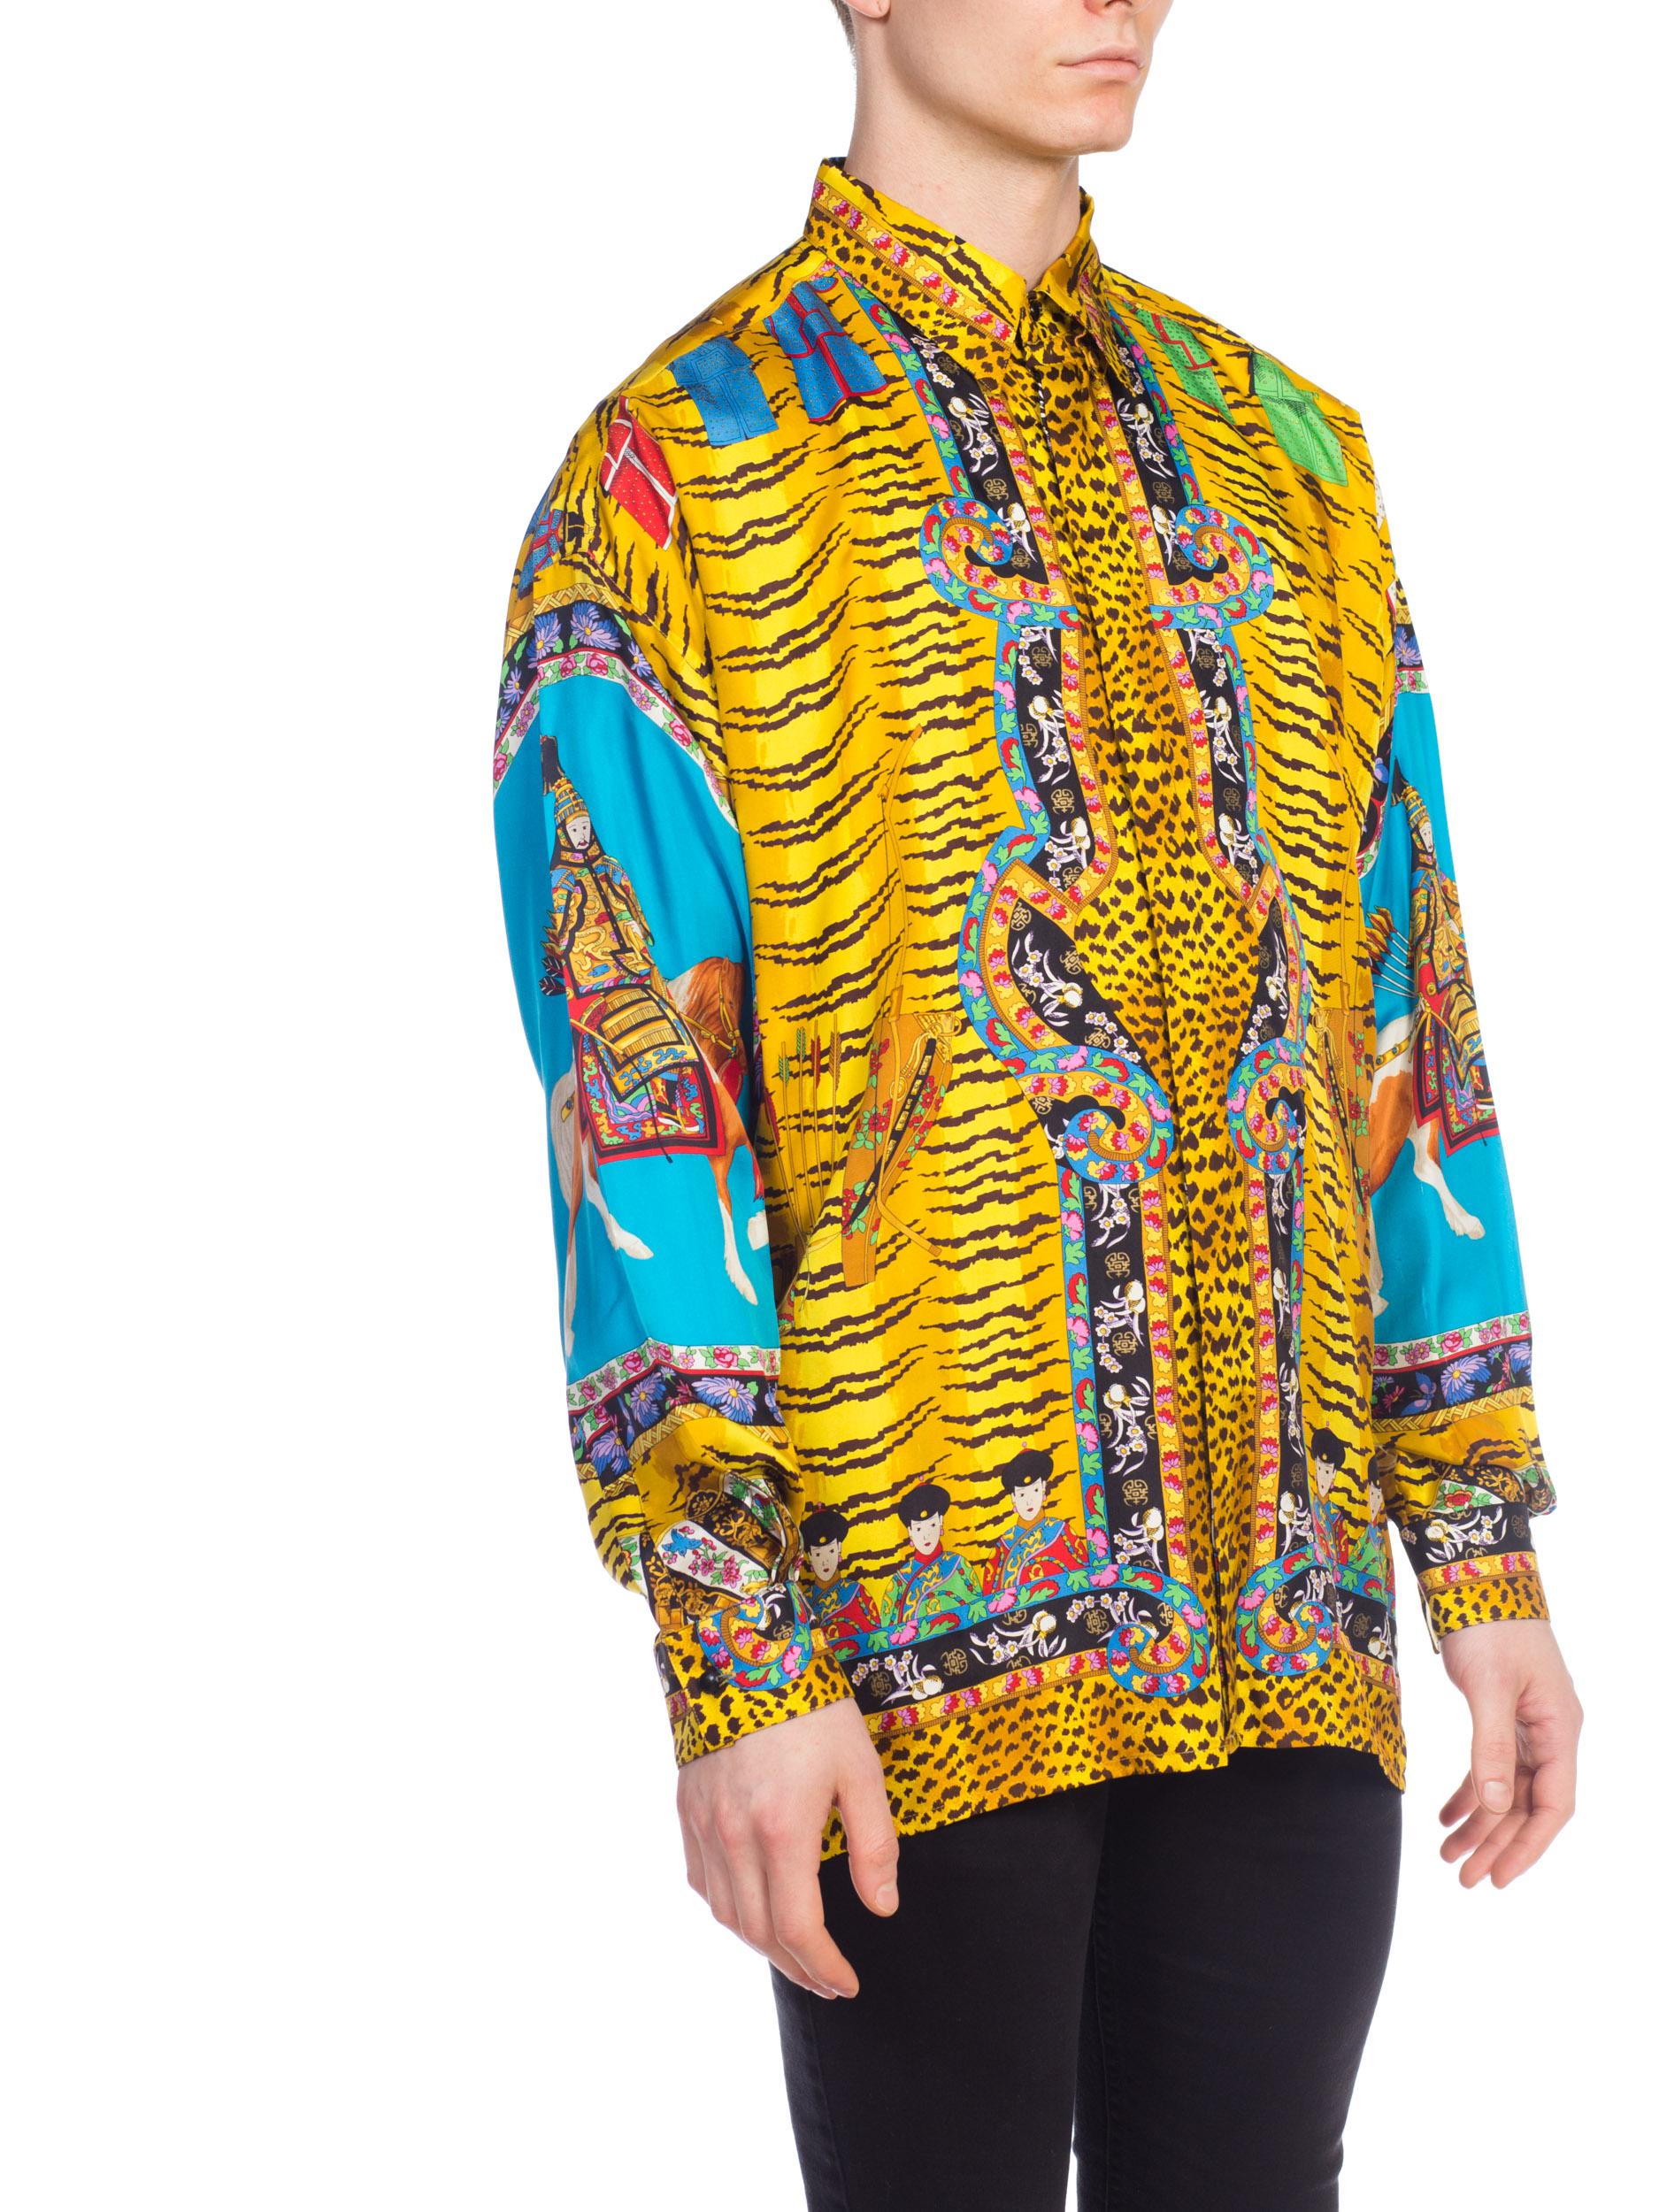 Rare Chinese Emperor Gianni Versace Silk Shirt Mens 2